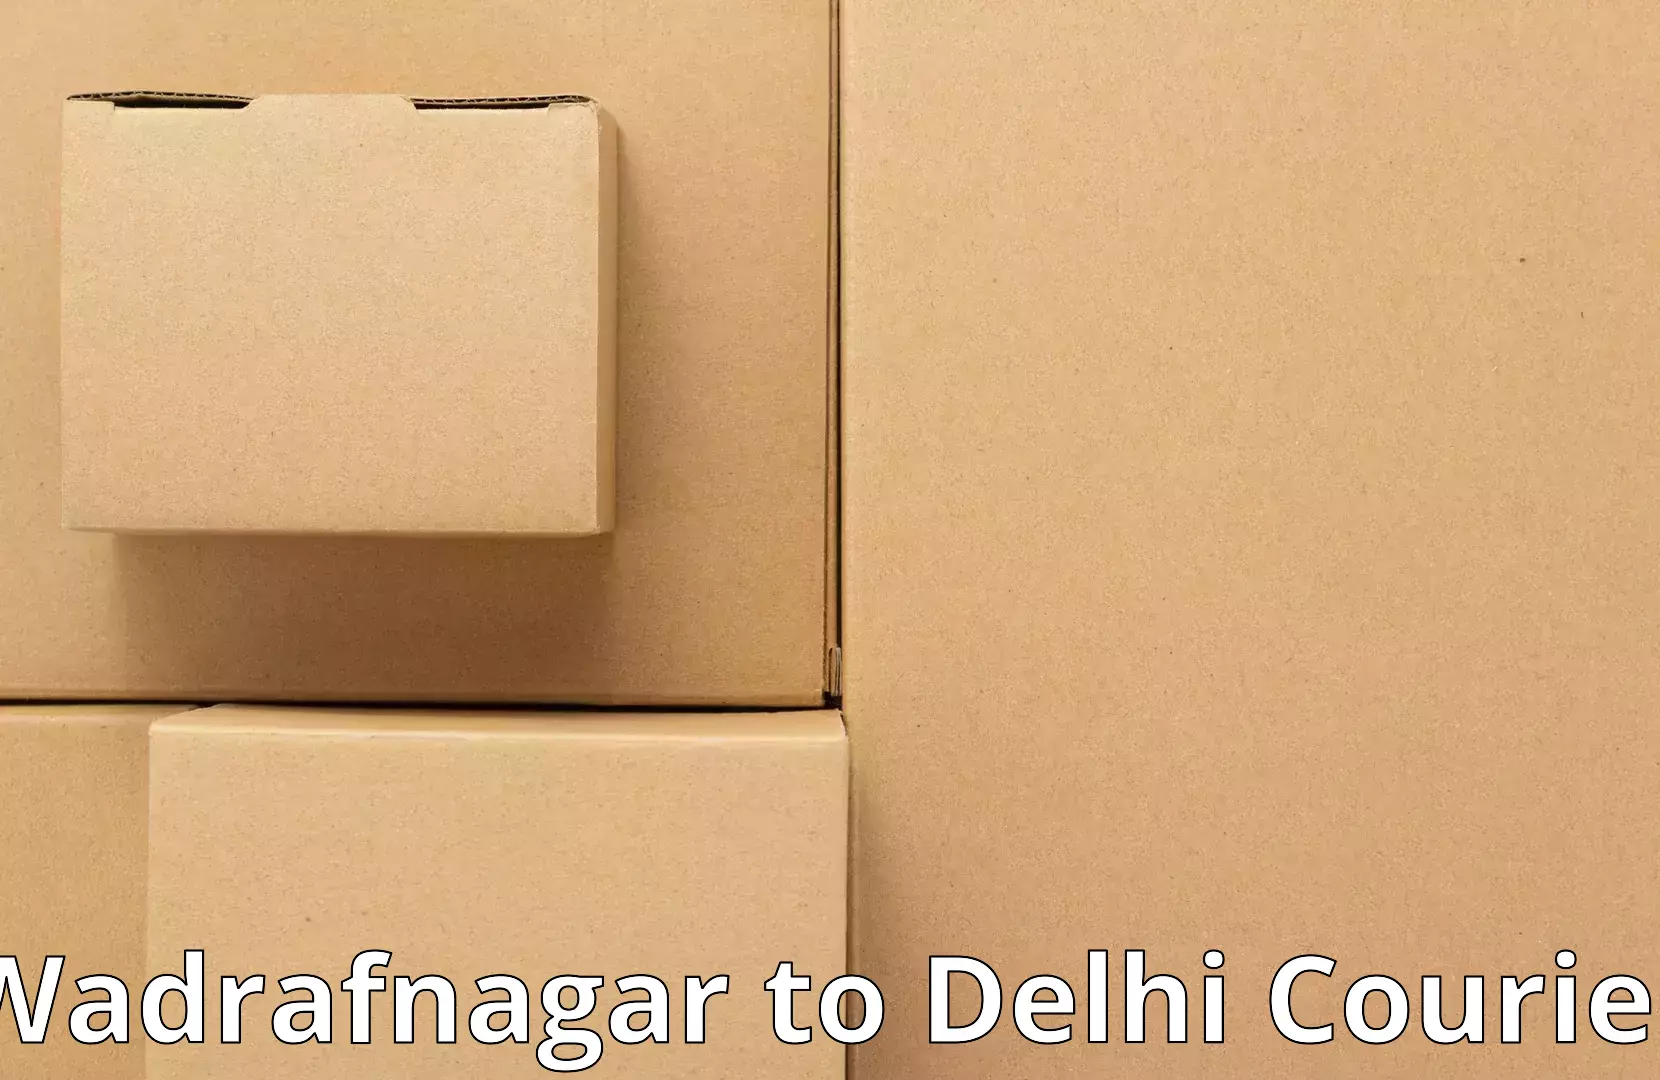 Efficient relocation services Wadrafnagar to IIT Delhi